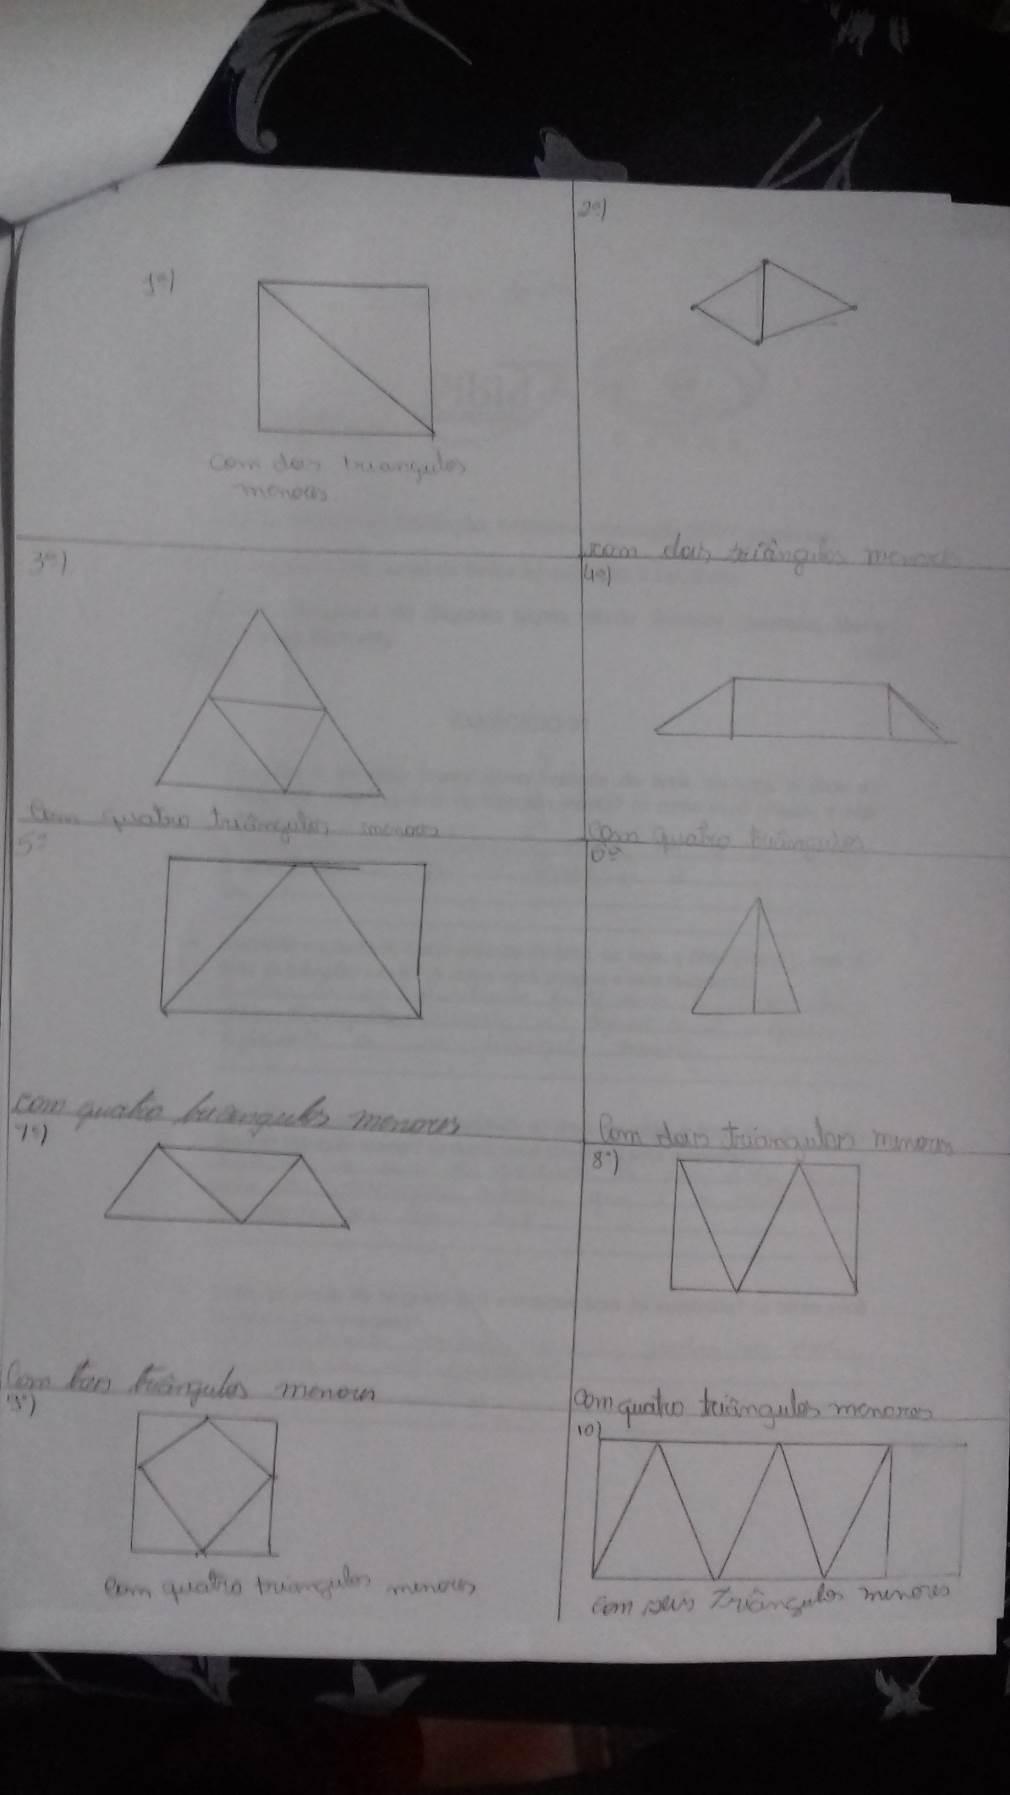 Na segunda atividade o que chamou a atenção foi o fato de que alguns alunos acrescentaram triângulos nos desenhos feitos, esquecendo que só poderiam usar as peças do seu próprio tangram.